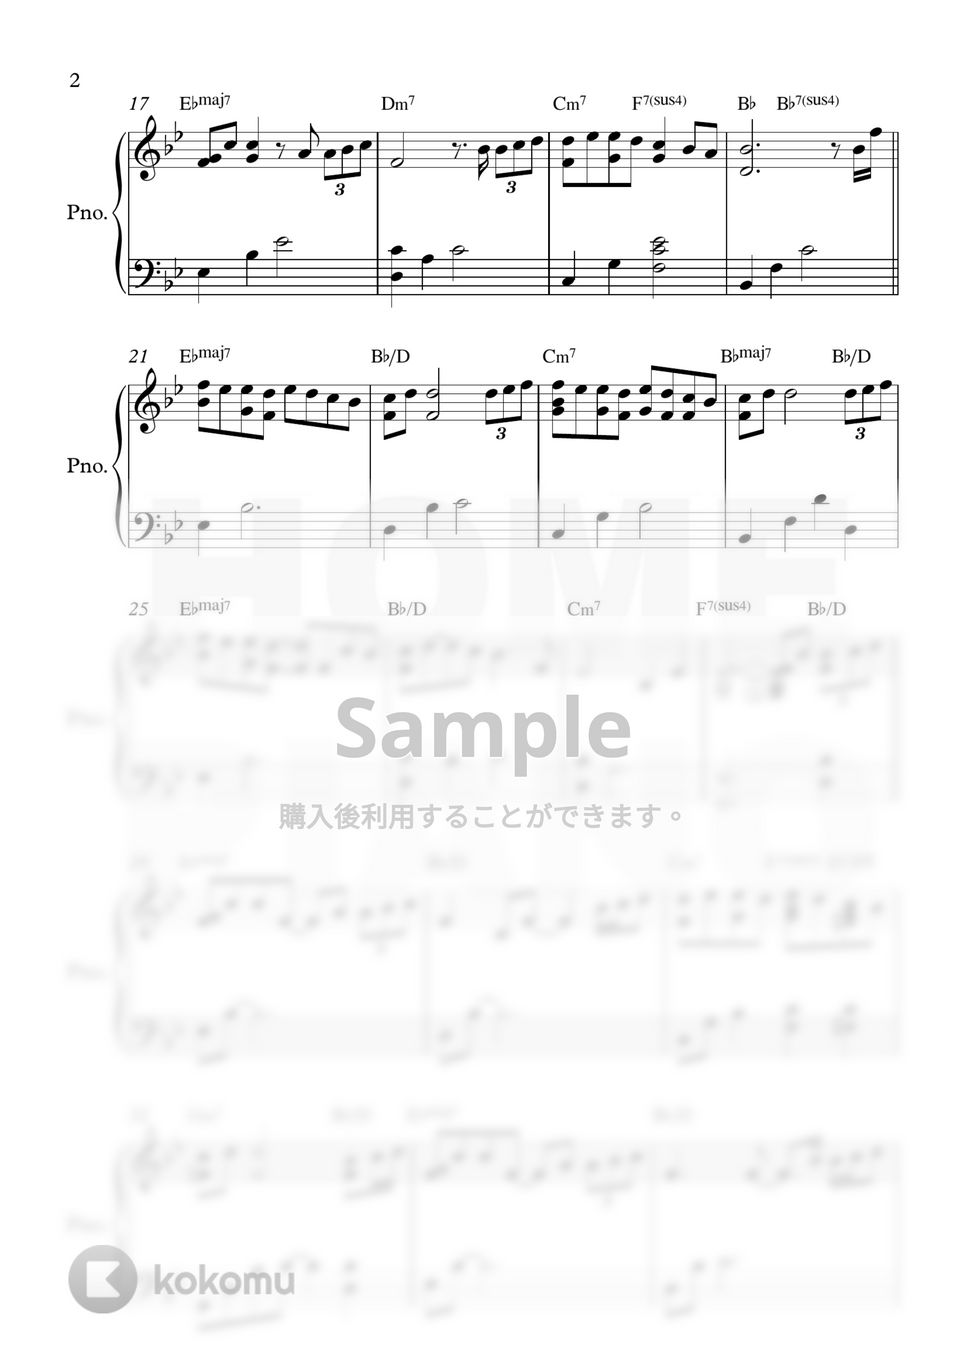 パク・ウォン - 努力 (中級) by HOME PIANO